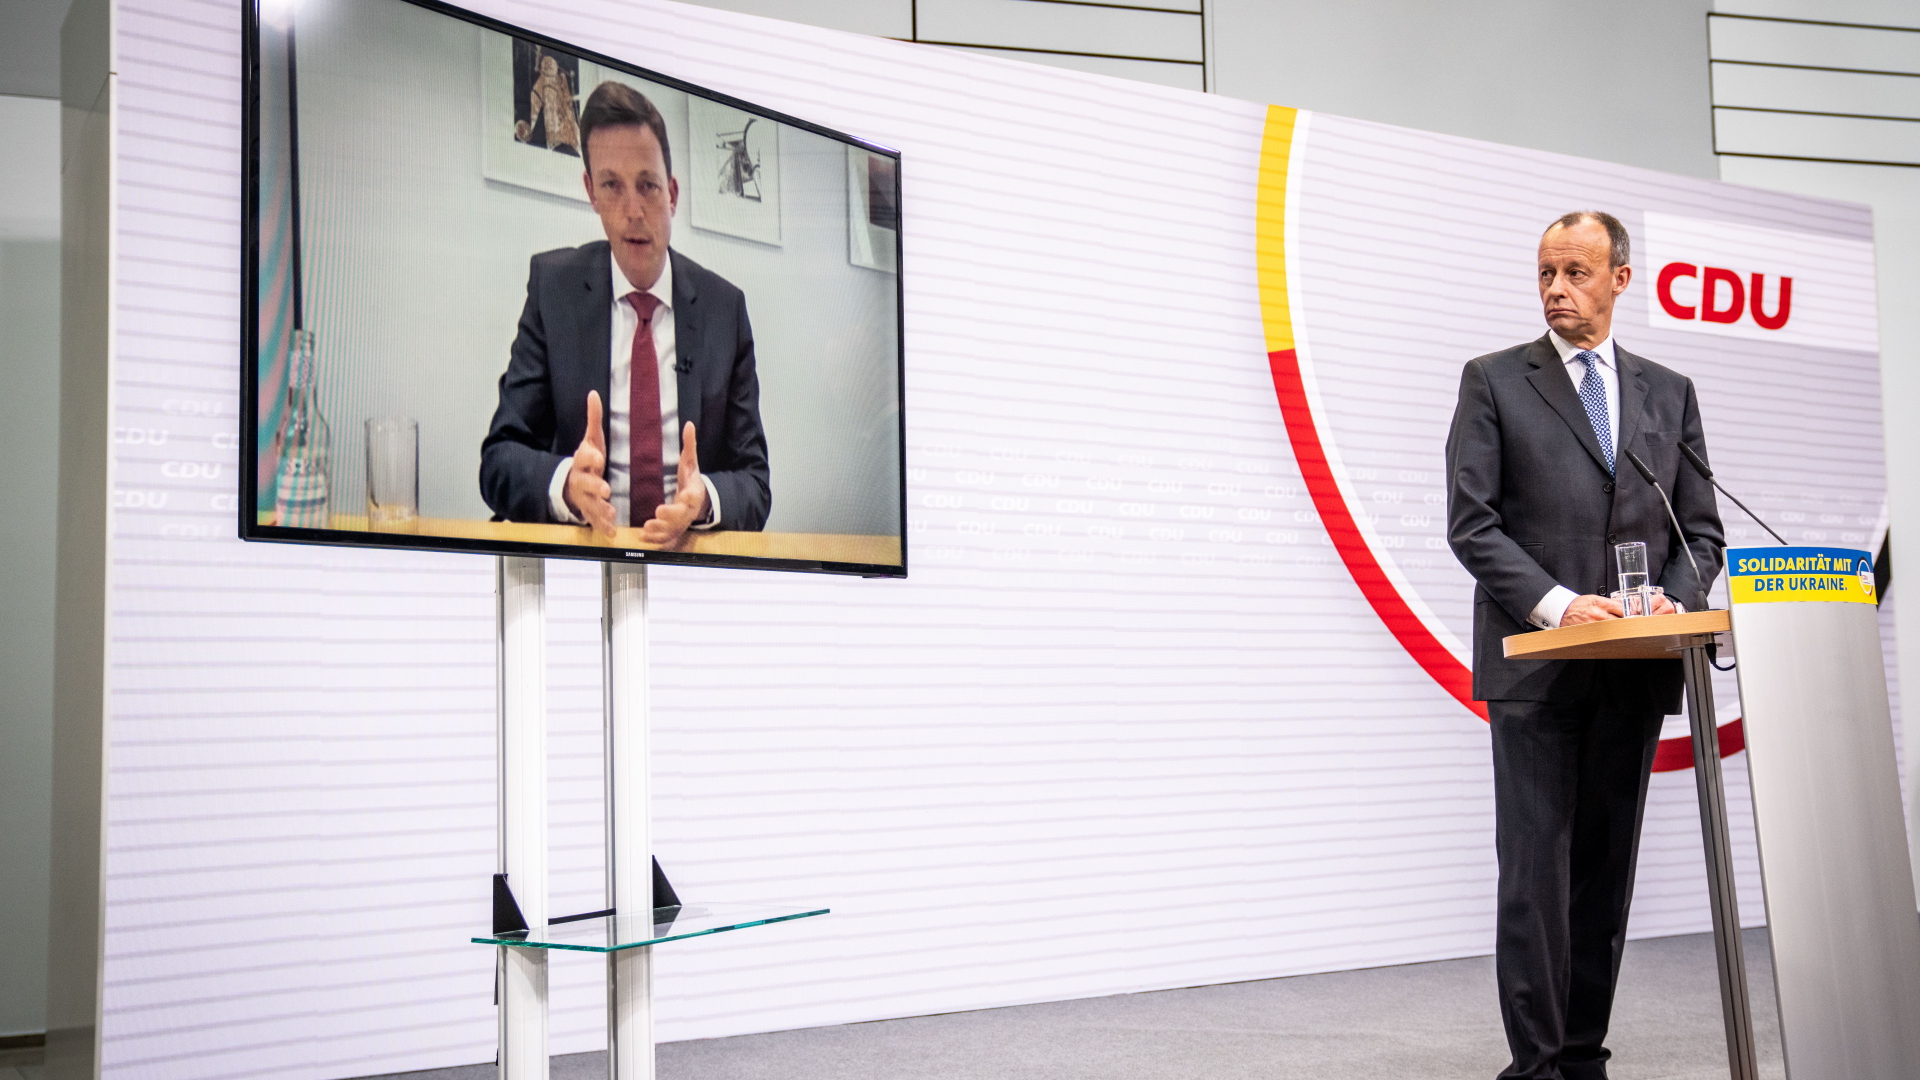 Der CDU-Bundesvorsitzende Friedrich Merz blickt bei einer Pressekonferenz nach der Wahl im Saarland im März 2022 zu einem Fernseher, auf dem der abgewählte Ministerpräsident Tobias Hans zu sehen ist. | dpa